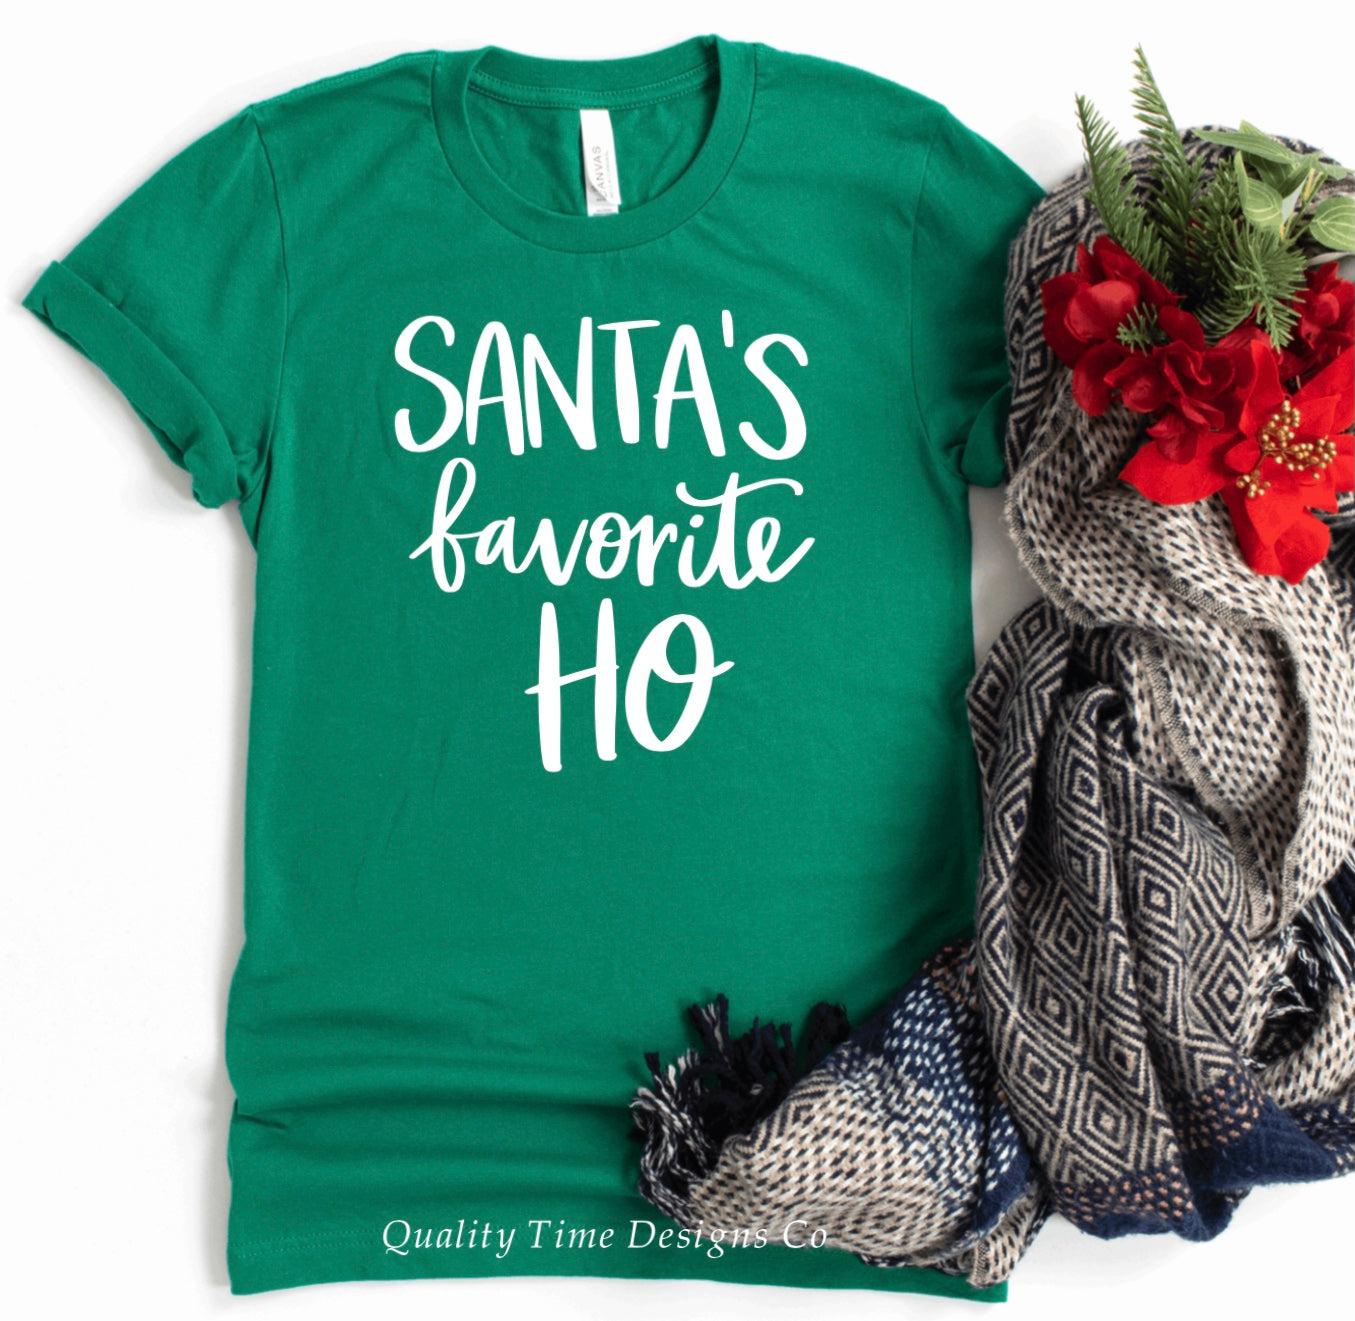 Santa’s favorite ho t-shirt 